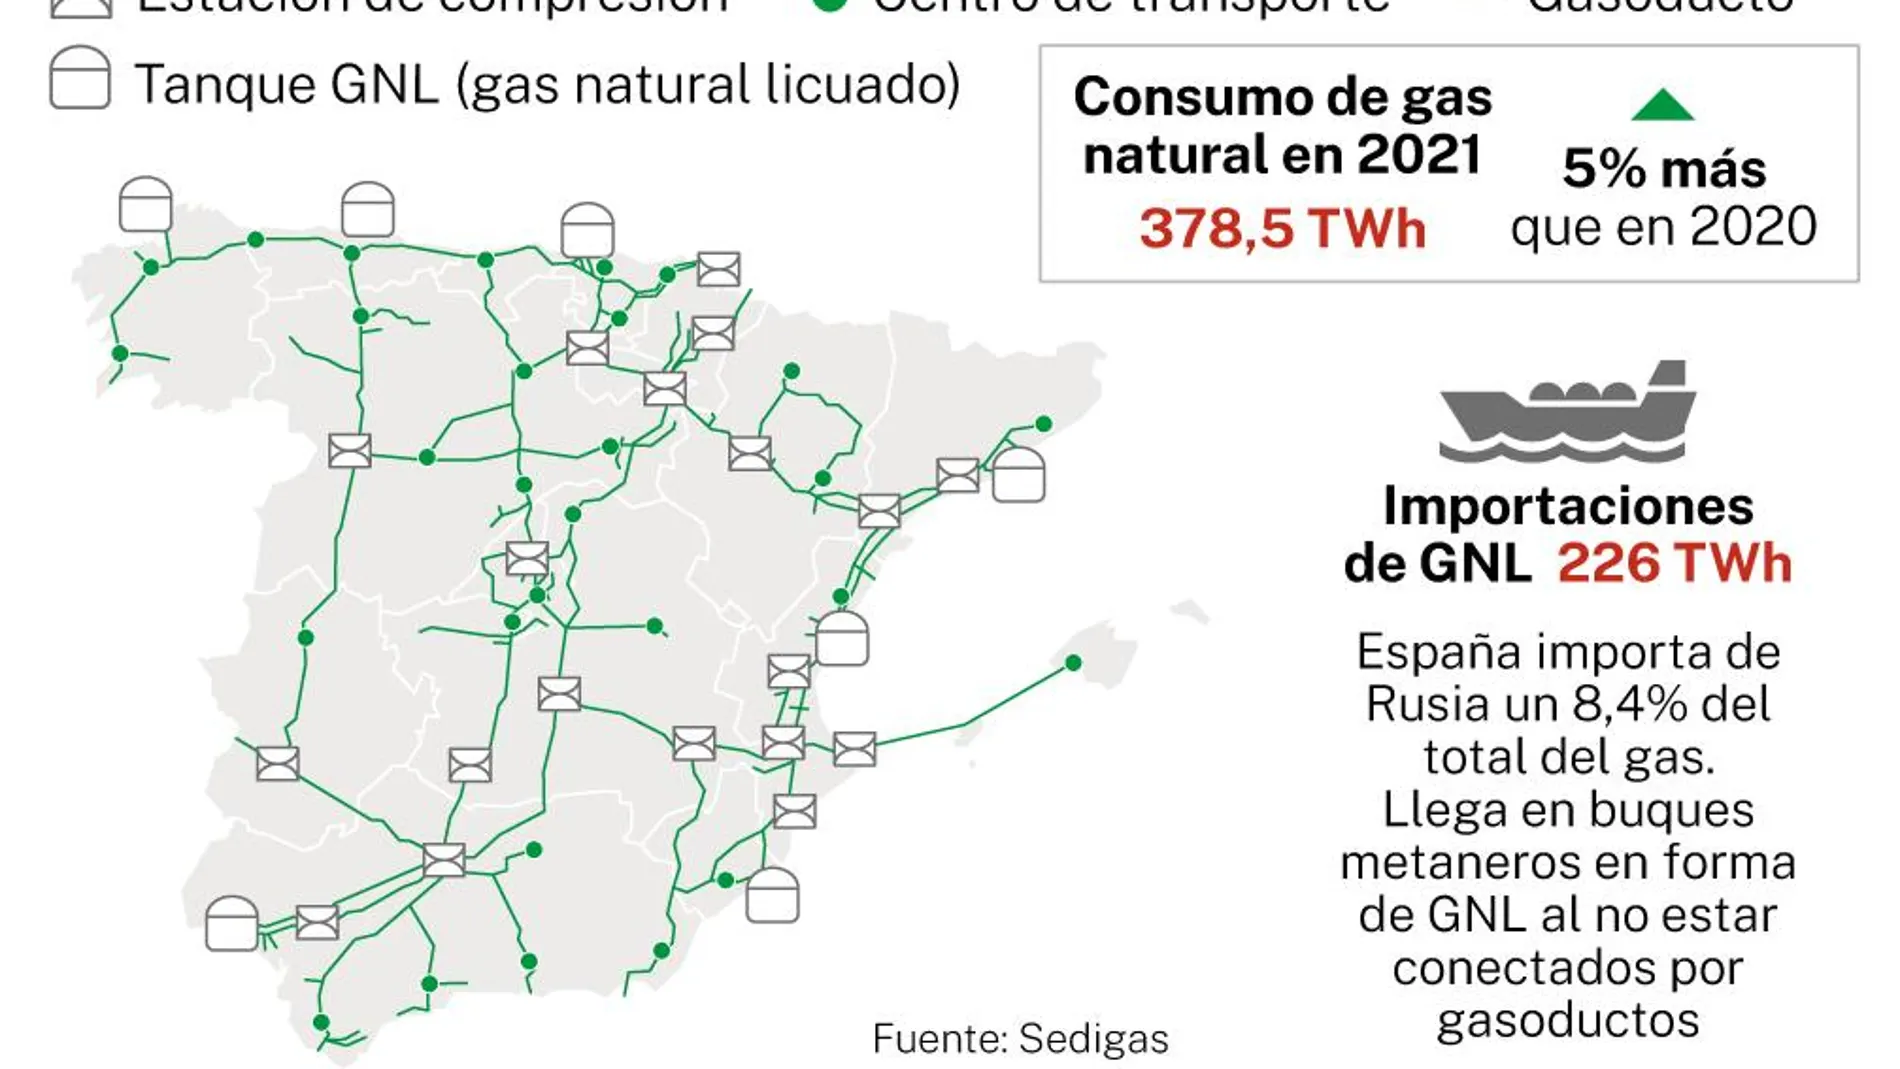 Dónde hay yacimientos de gas natural en España?